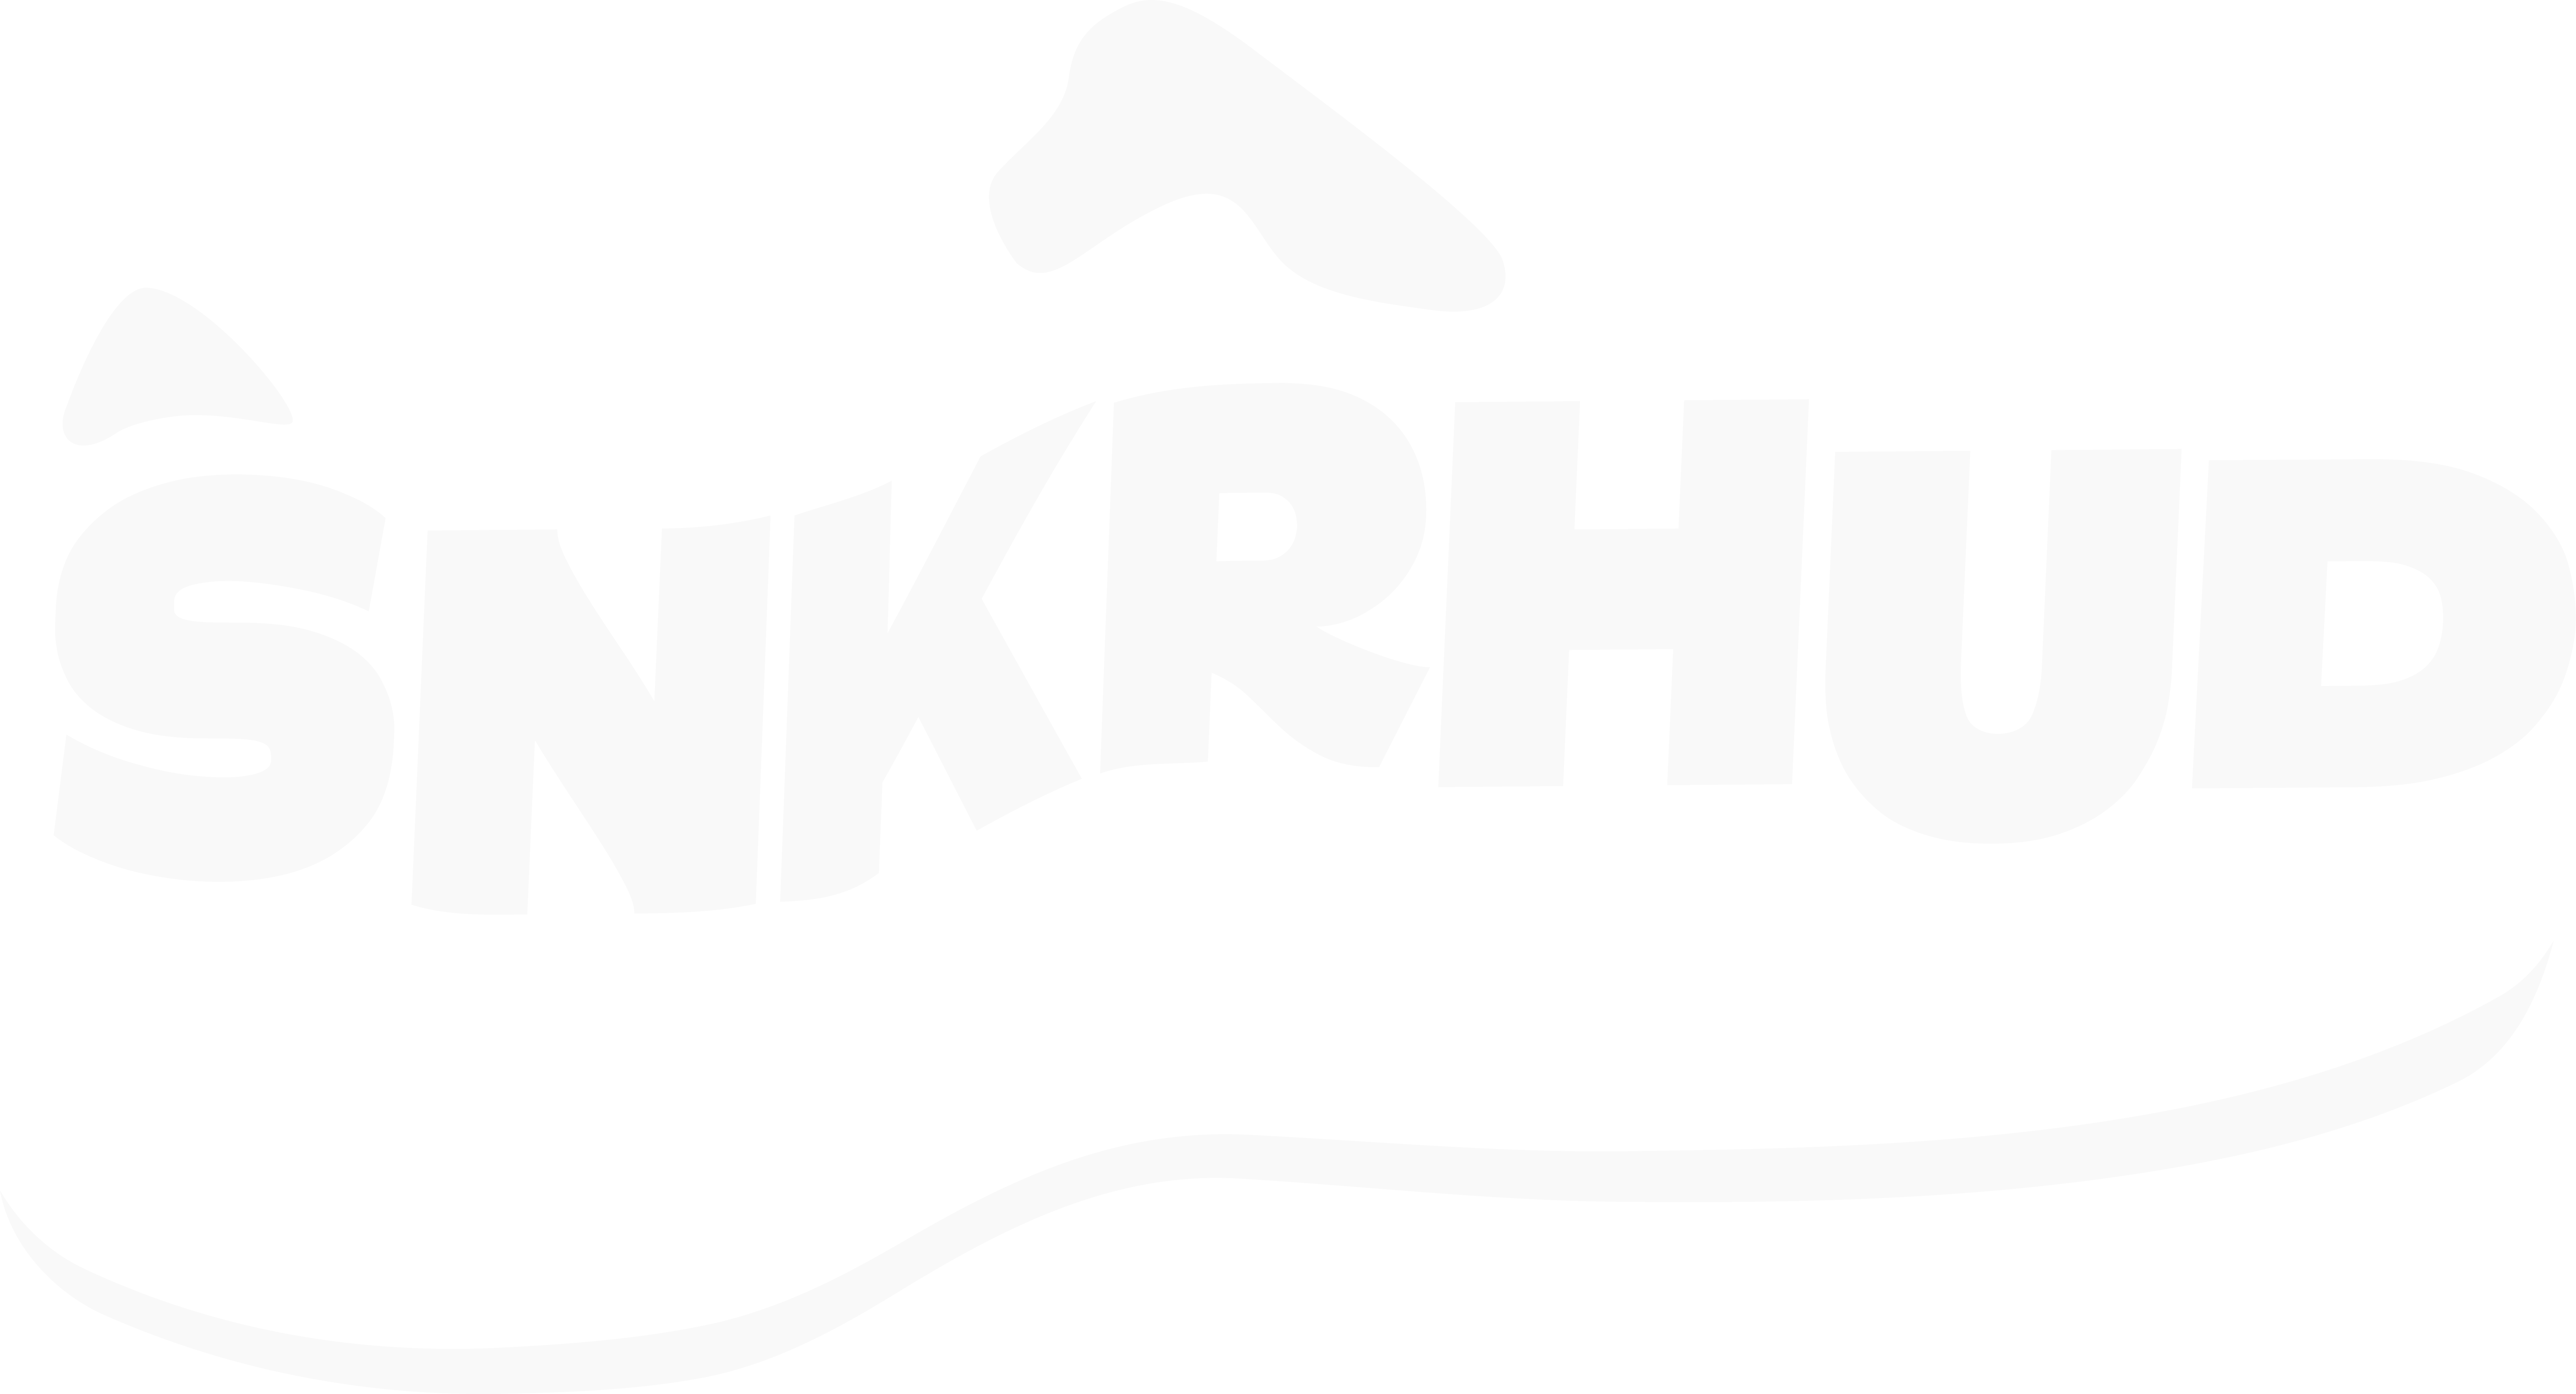 SNKRHUDNFT